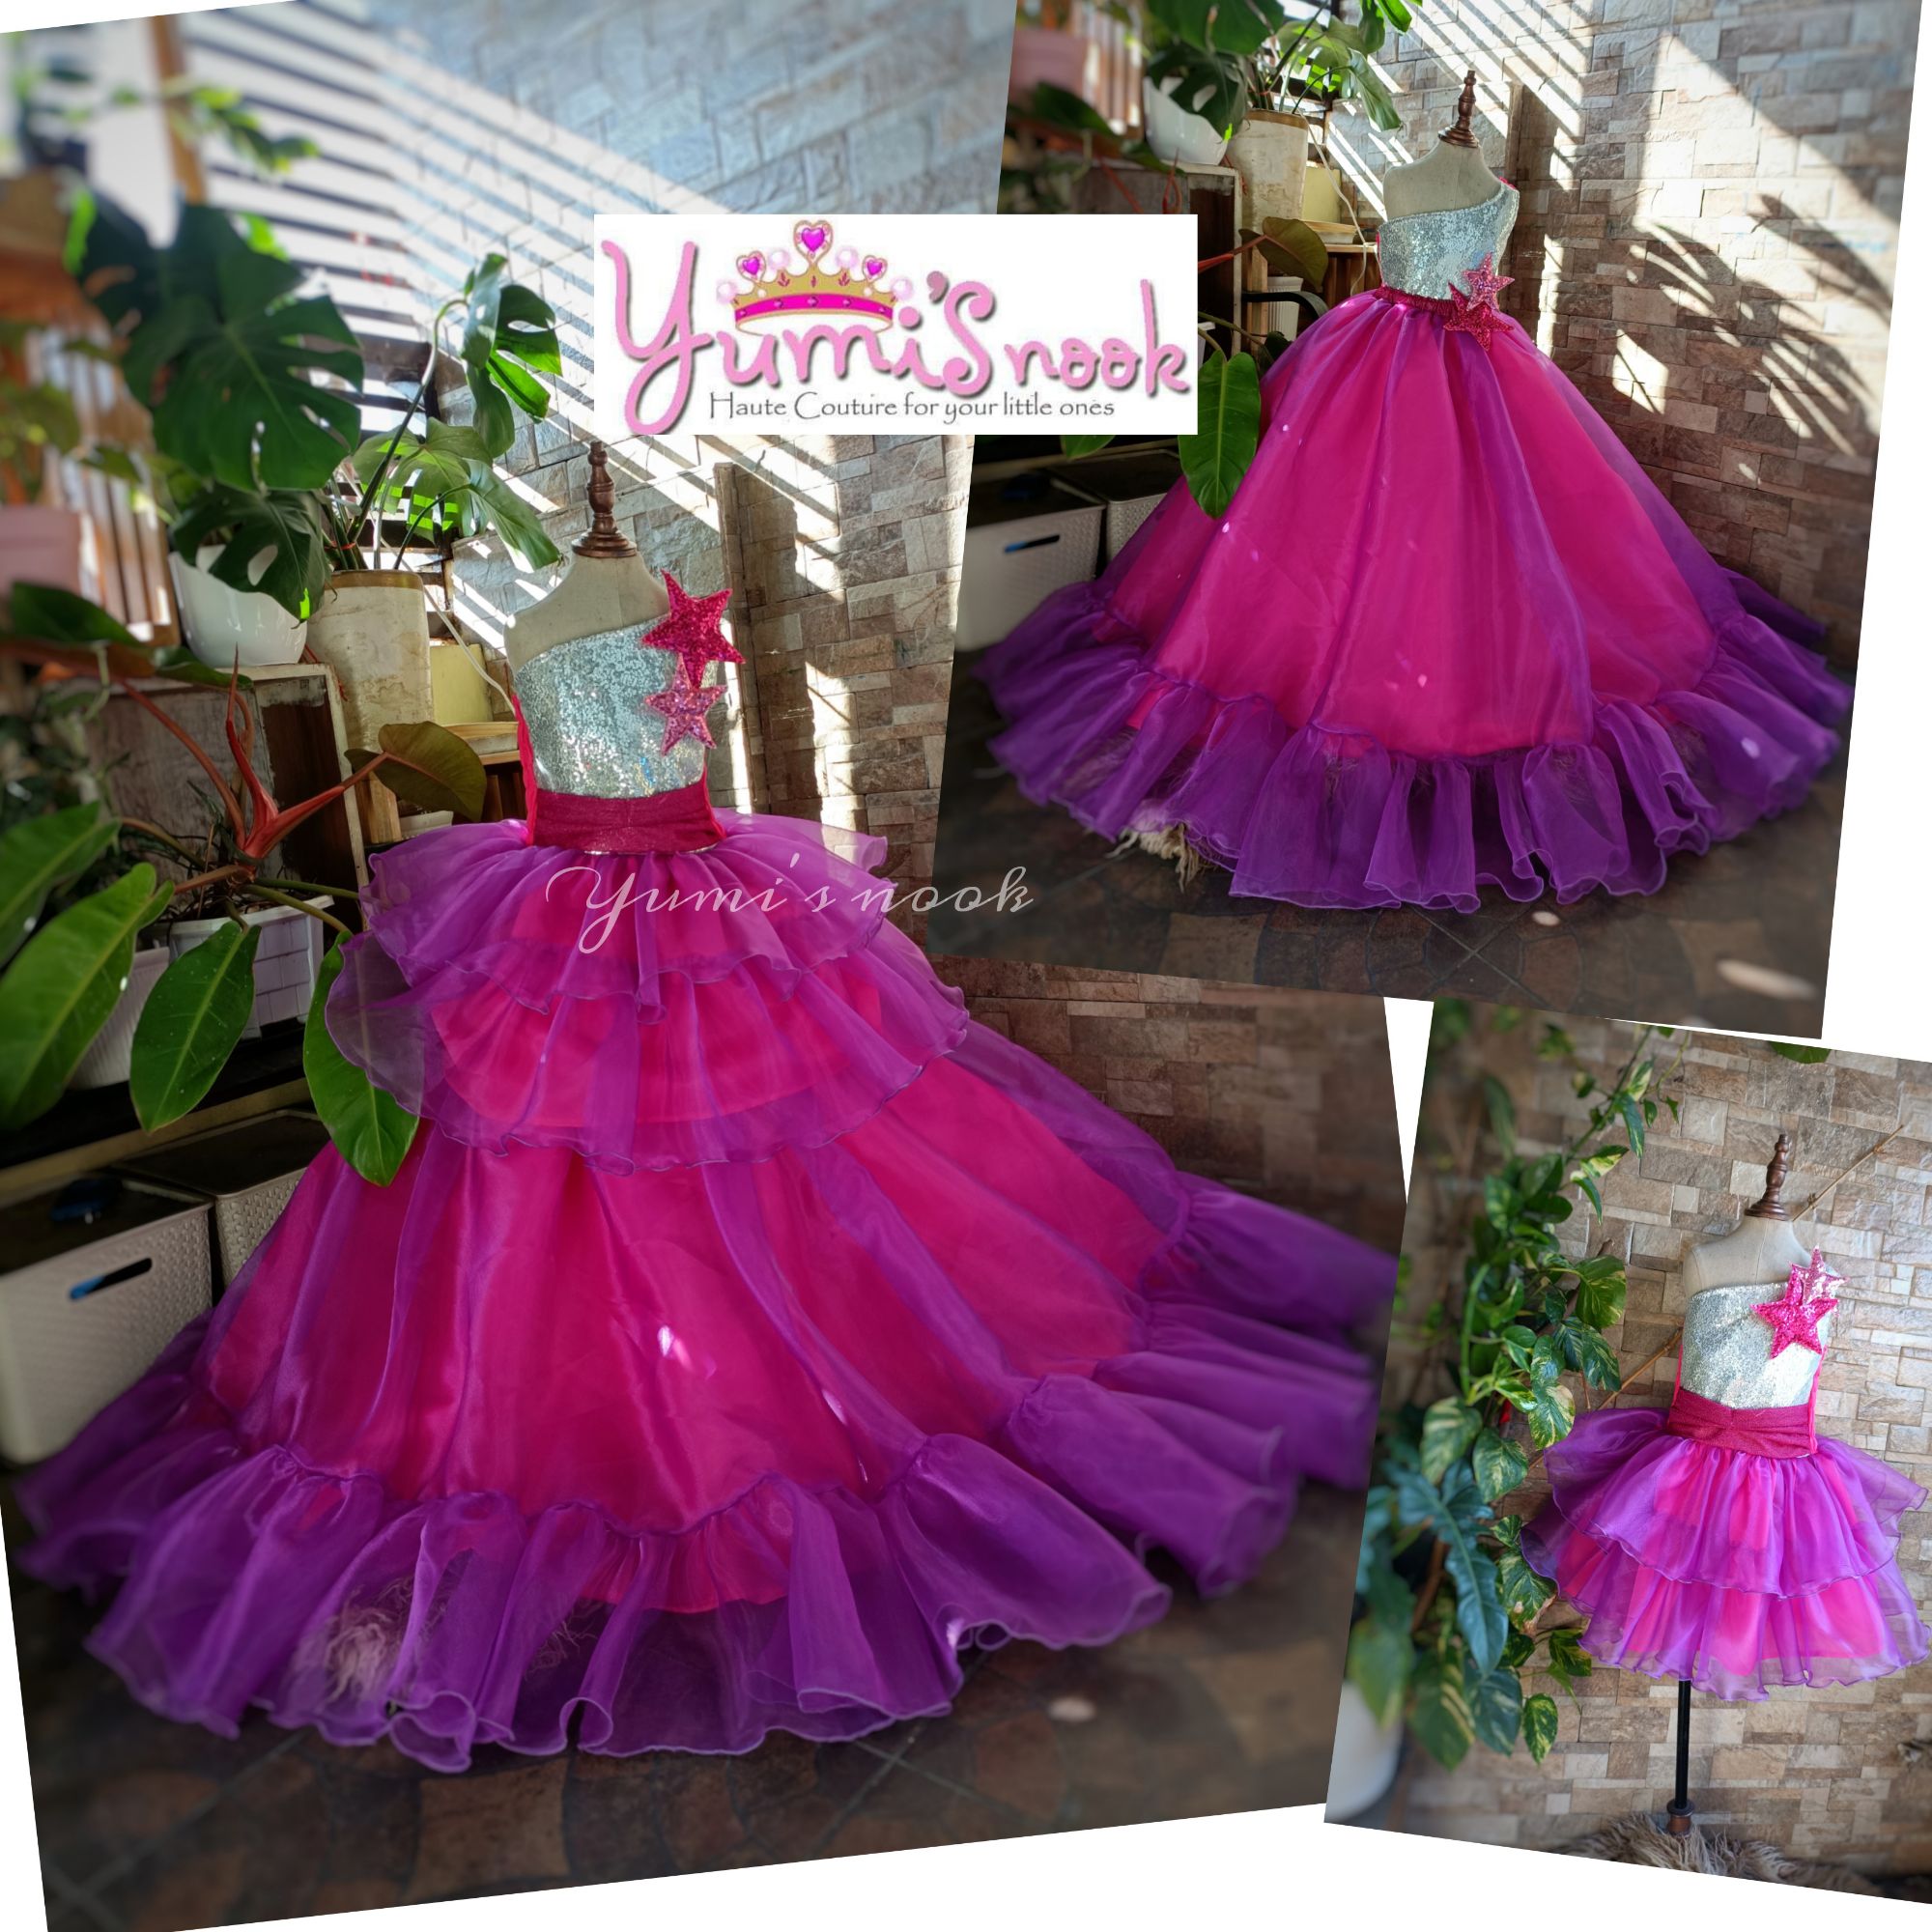 Barbie Dress For Birthday Girl - Shop on Pinterest